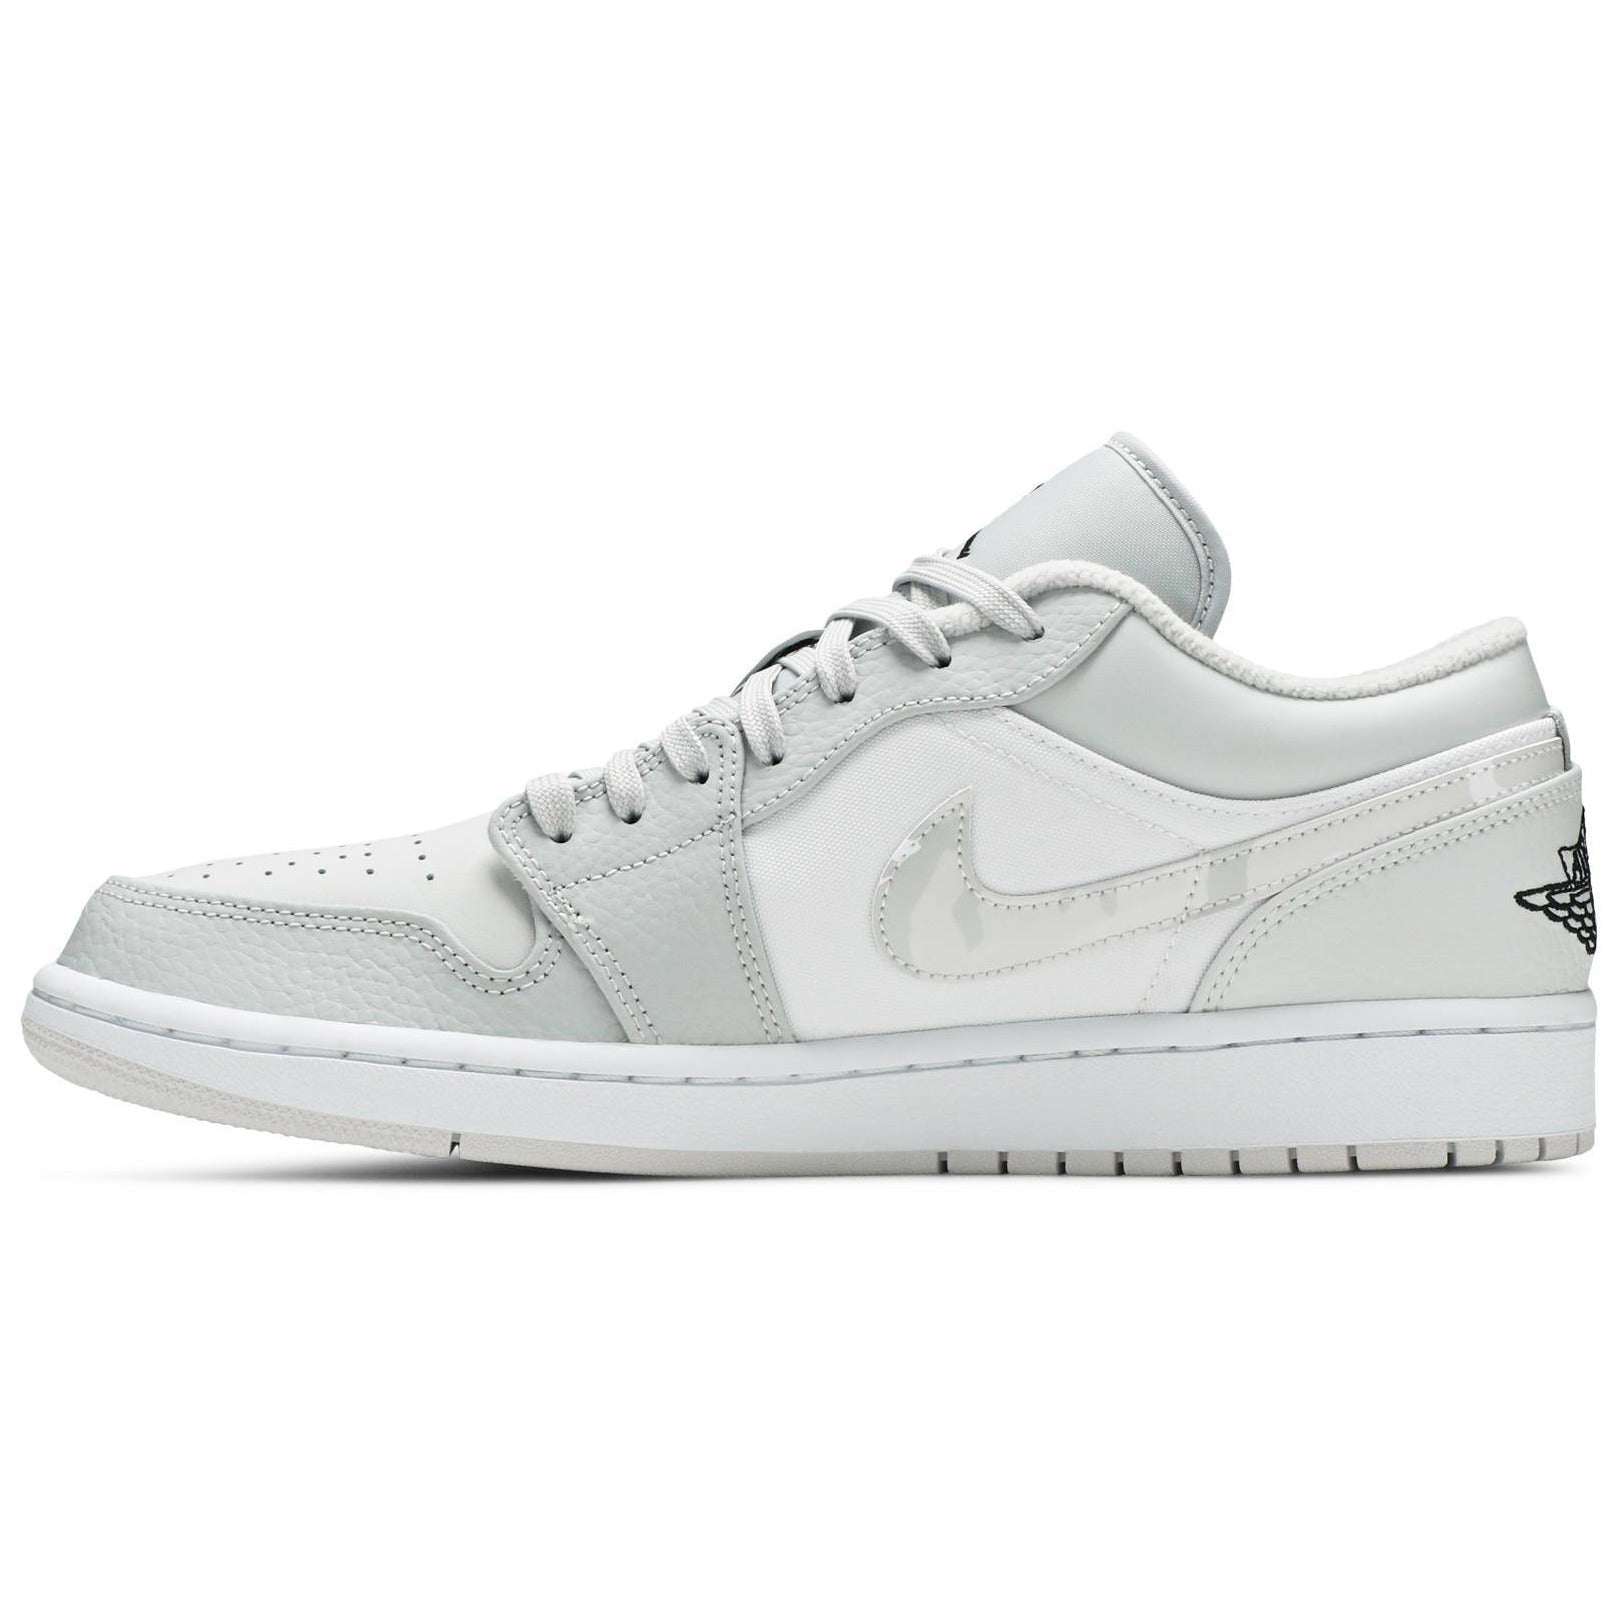 Nike Air Jordan 1 Low White Camo Men's